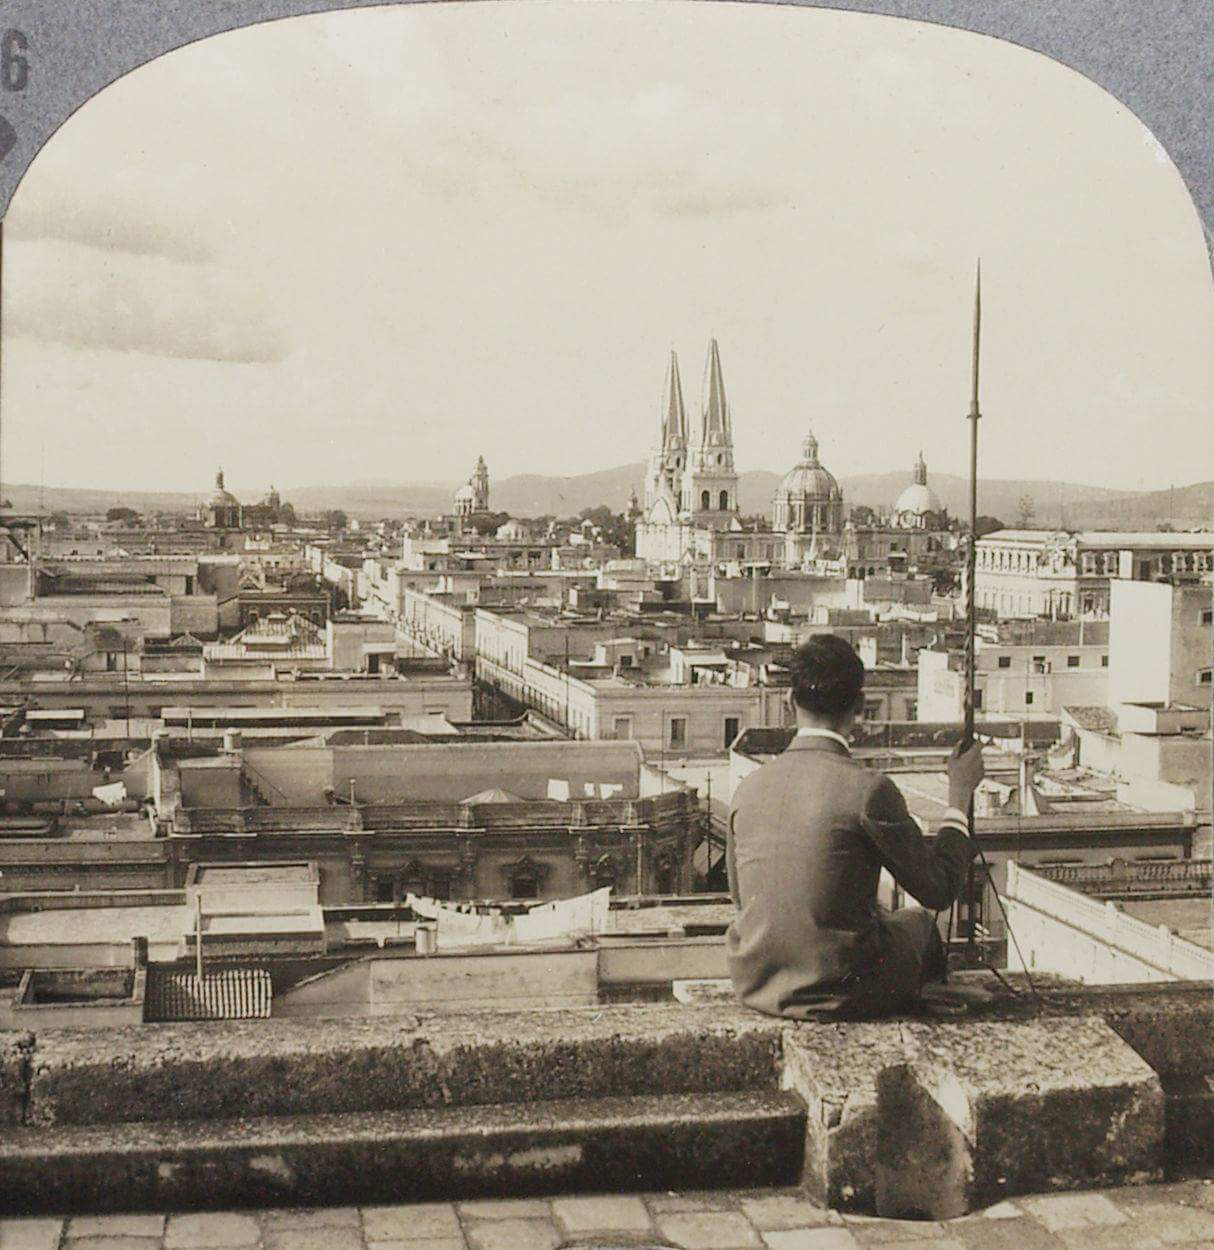 Este es un retrato en blanco y negro de la ciudad de Guadalajara con estilo antiguo, que muestra a un hombre sentado de espaldas en el borde de lo que parece ser una azotea o una terraza alta. El hombre lleva puesto un traje formal con chaqueta, pantalones y zapatos, junto con un sombrero elegante. Parece estar sosteniendo un bastón o una caña con su mano derecha y está mirando hacia el horizonte. La escena captura un paisaje urbano con varios edificios que se extienden hasta el fondo. Es una vista panorámica en la que se destacan dos prominentes catedrales o iglesias con torres puntiagudas y detalles arquitectónicos intrincados. También hay múltiples cúpulas y tejados que indican una densa área urbana. El cielo sobre la ciudad es claro, con algunas nubes dispersas, lo que sugiere que podría ser un día tranquilo. El formato de la imagen es de un rectángulo con los bordes superiores redondeados, lo que le da la apariencia de una vieja fotografía estereoscópica o de tarjeta de visita, que era un estilo común de presentación de fotografías en el siglo XIX y principios del XX. La imagen provoca una sensación de nostalgia y contemplación, como si capturara un momento en la historia de una ciudad desconocida.